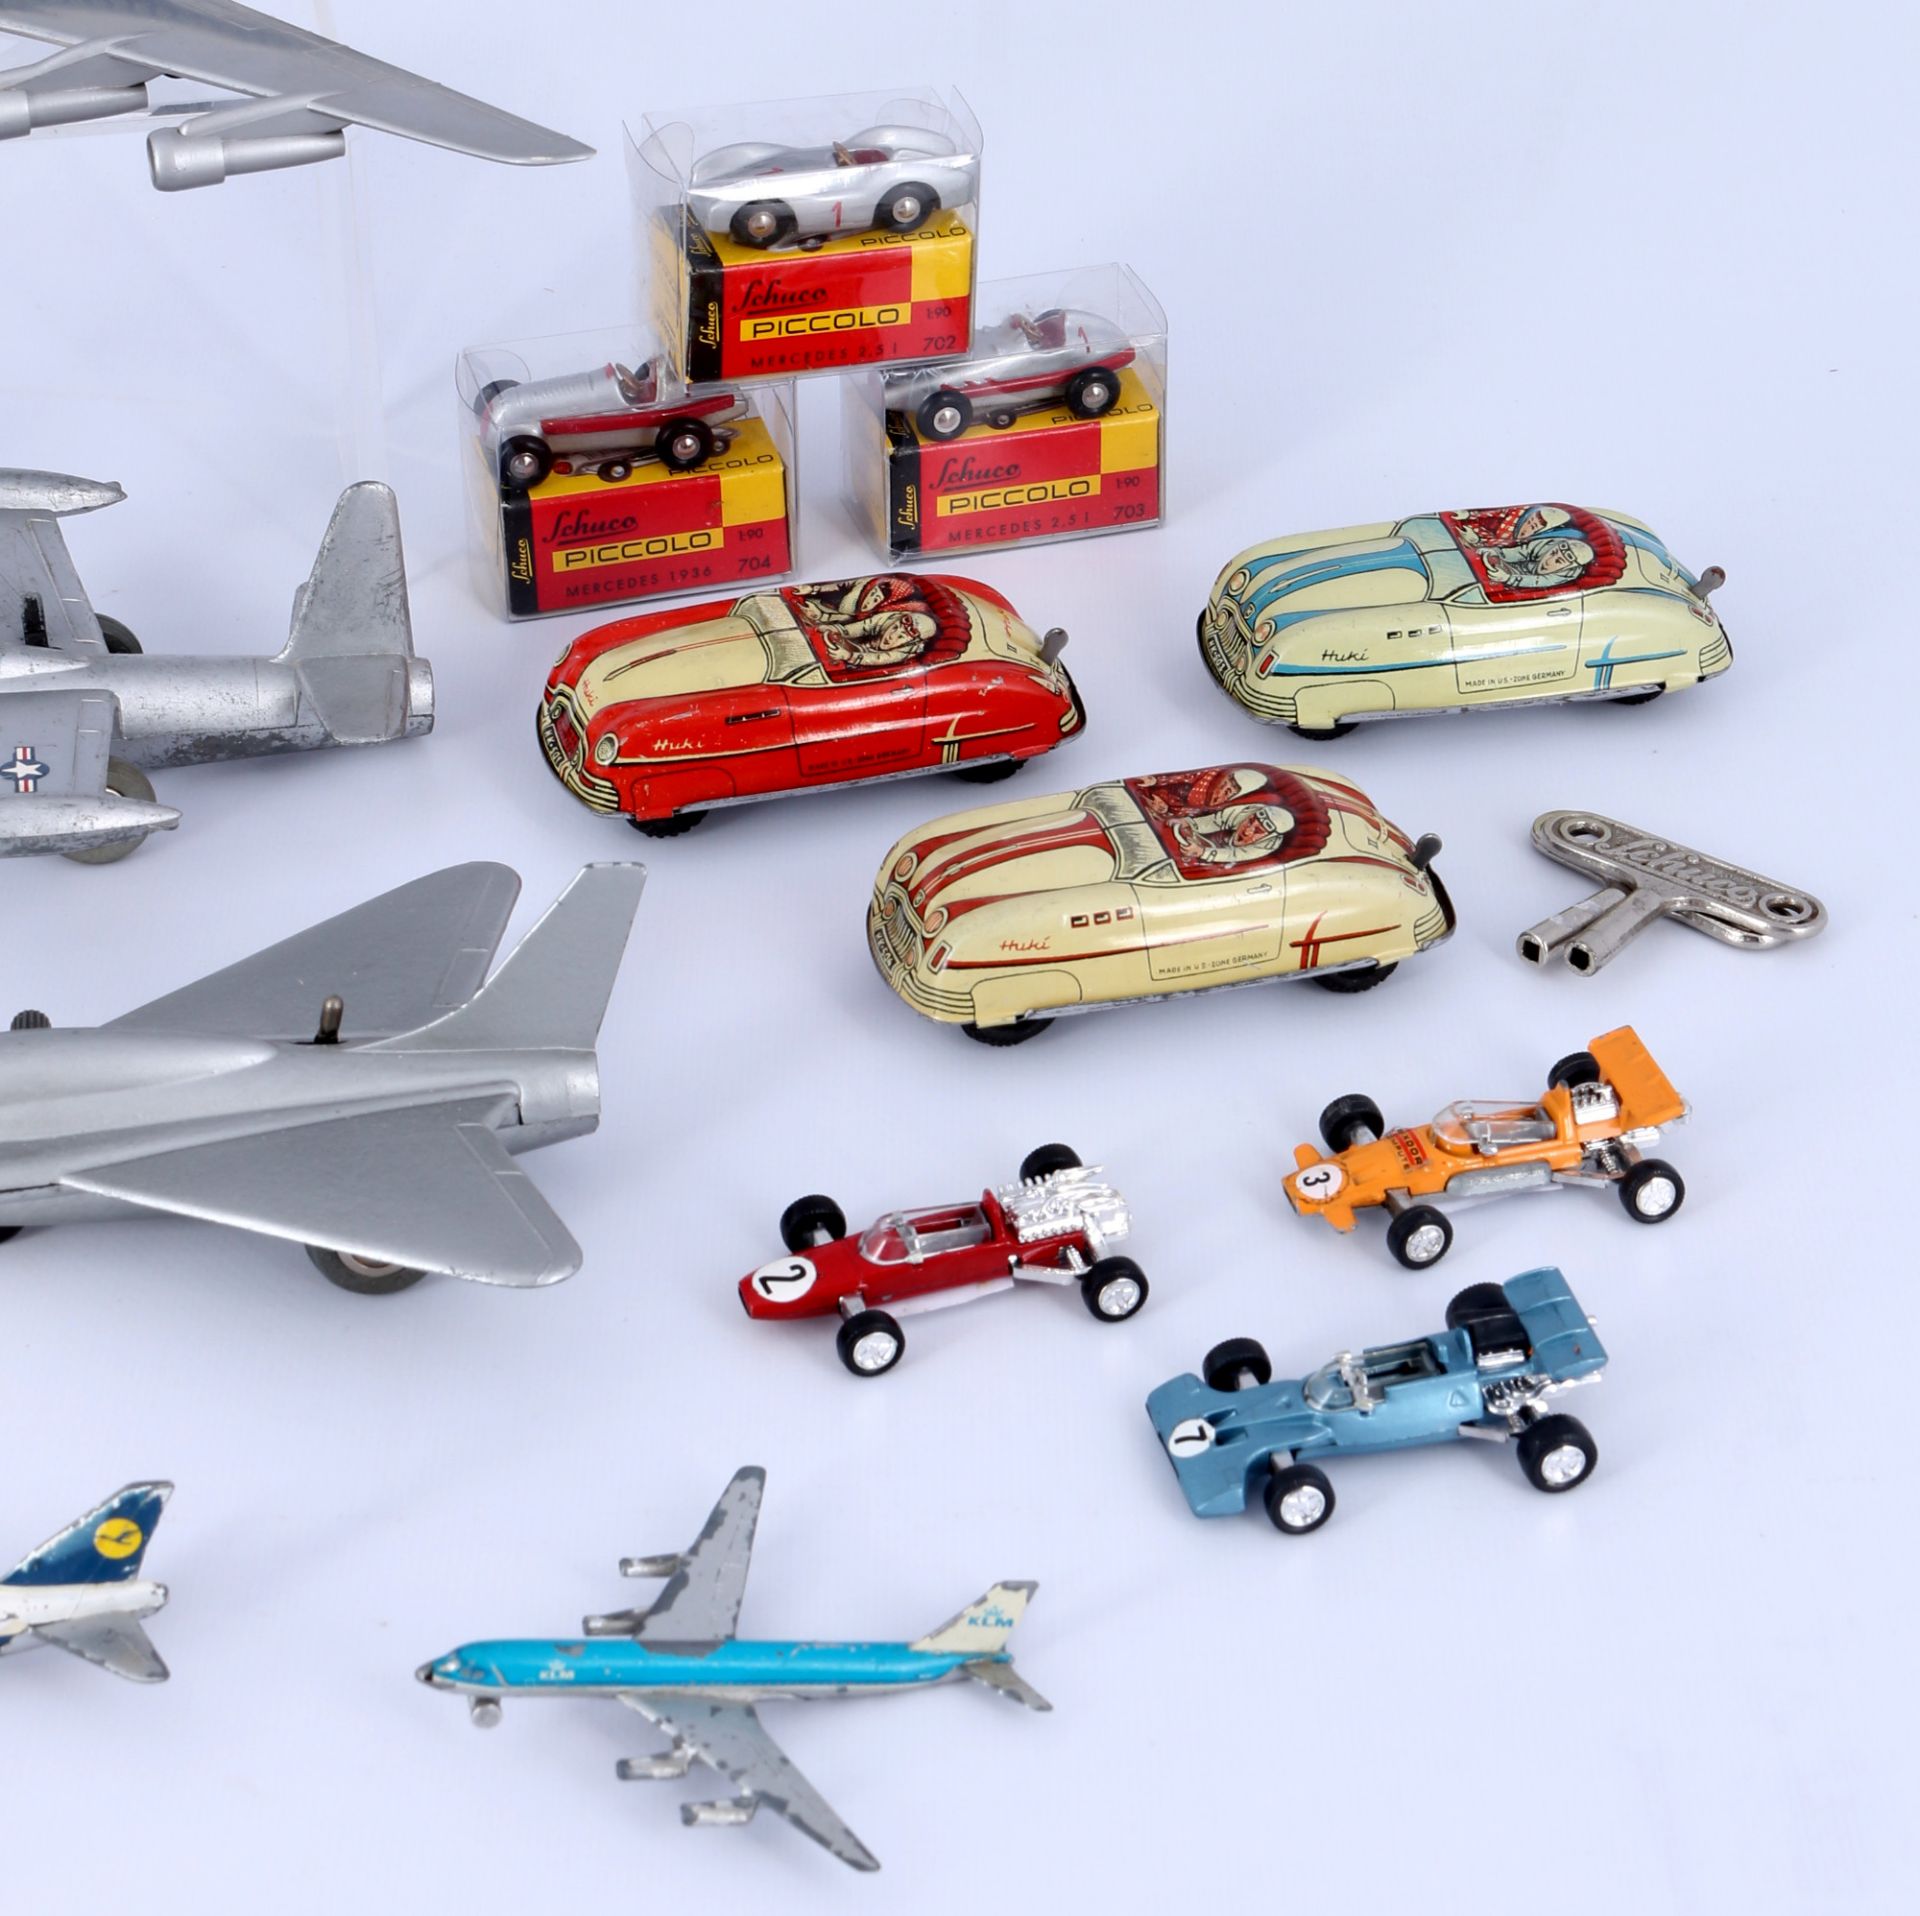 Schuco umfangreiche Sammlung an Flugzeugen und Fahrzeugen, - Bild 4 aus 4